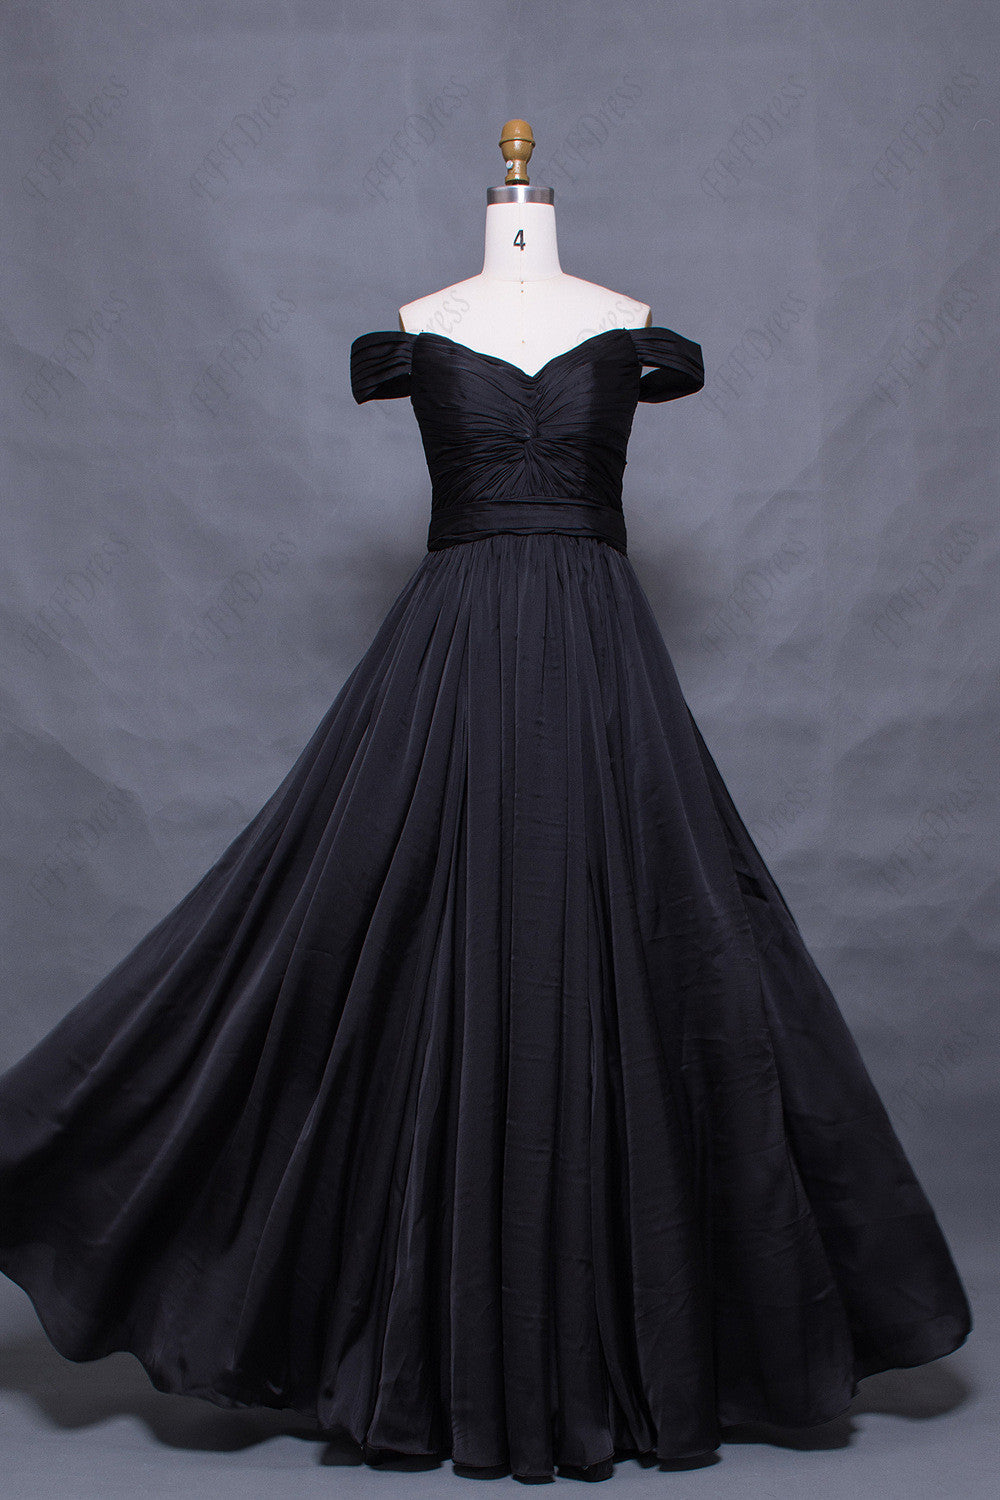 Vintage off the shoulder black prom dresses long